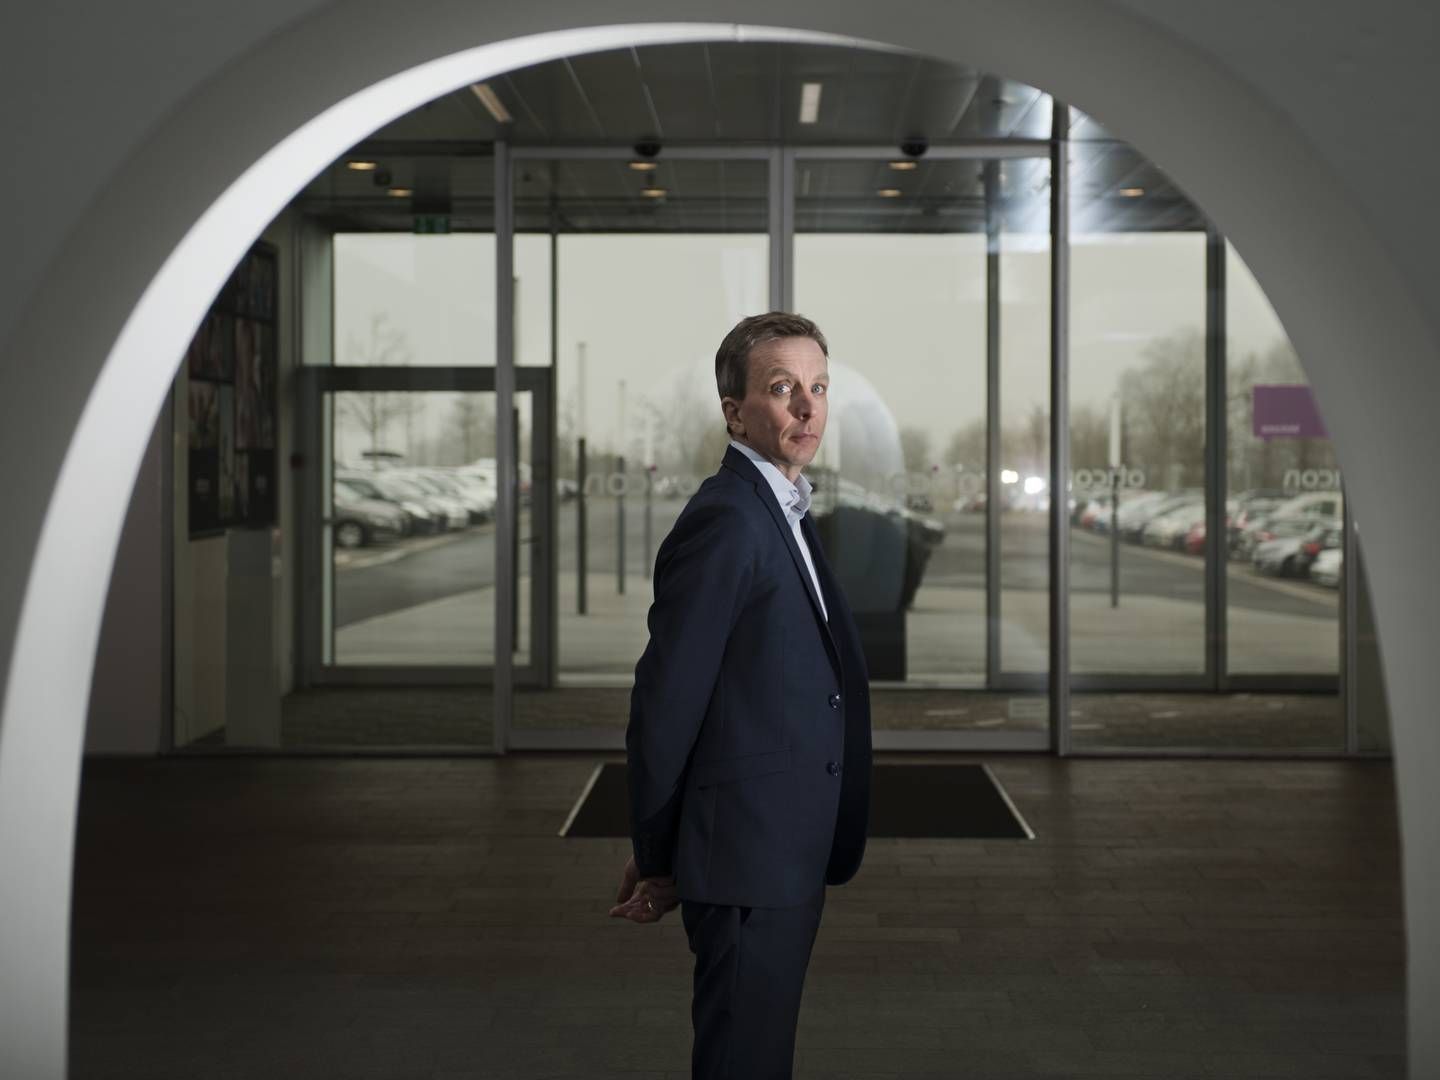 Søren Nielsen, CEO of Demant | Photo: Kenneth Lysbjerg Koustrup/ERH